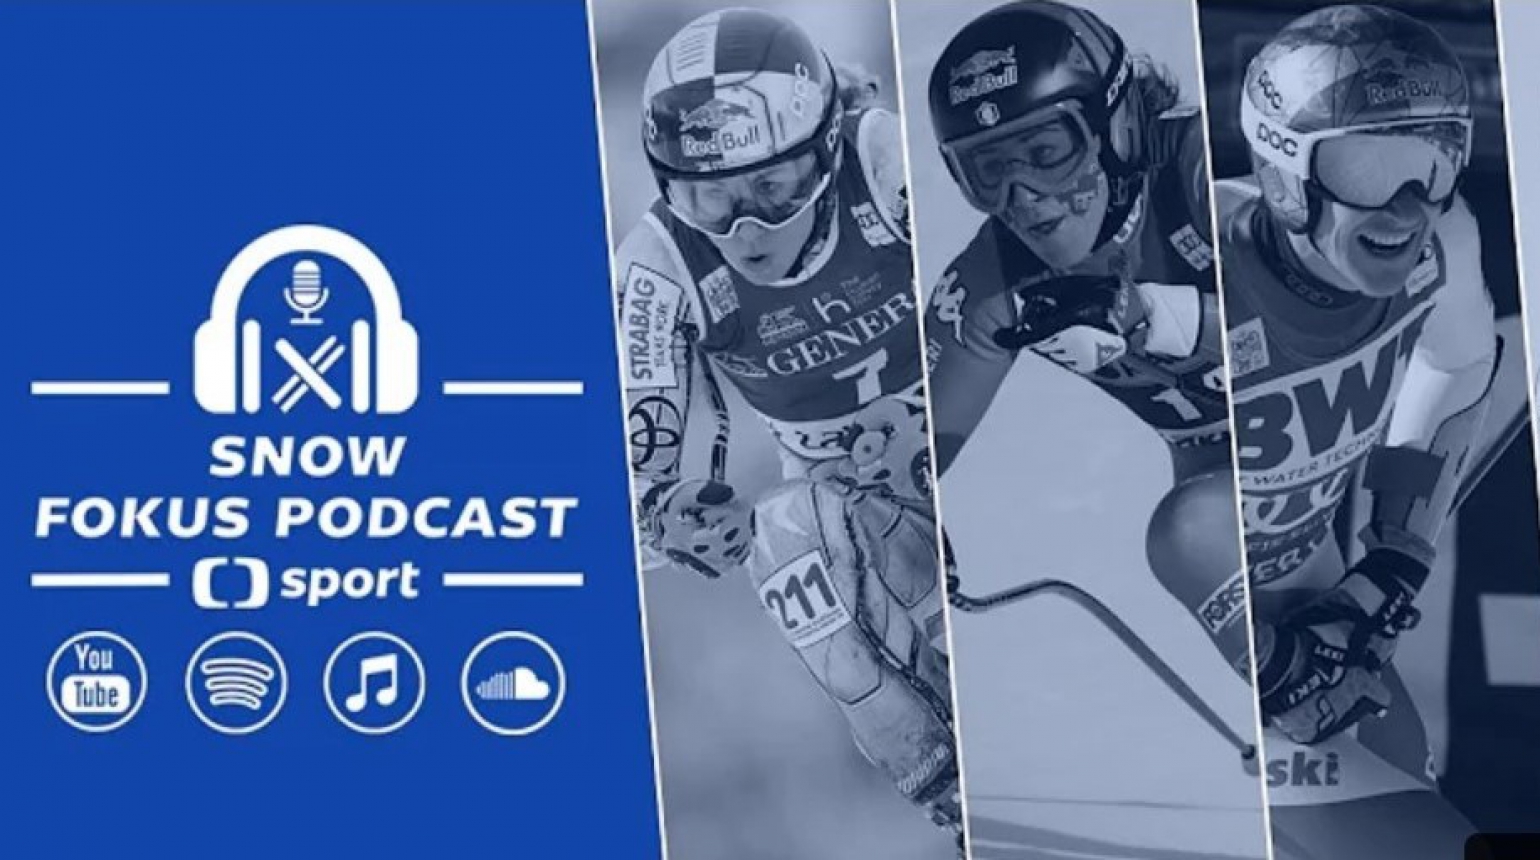 Snow Focus Podcast: Co prozradil start rychlostních závodů Světového poháru?